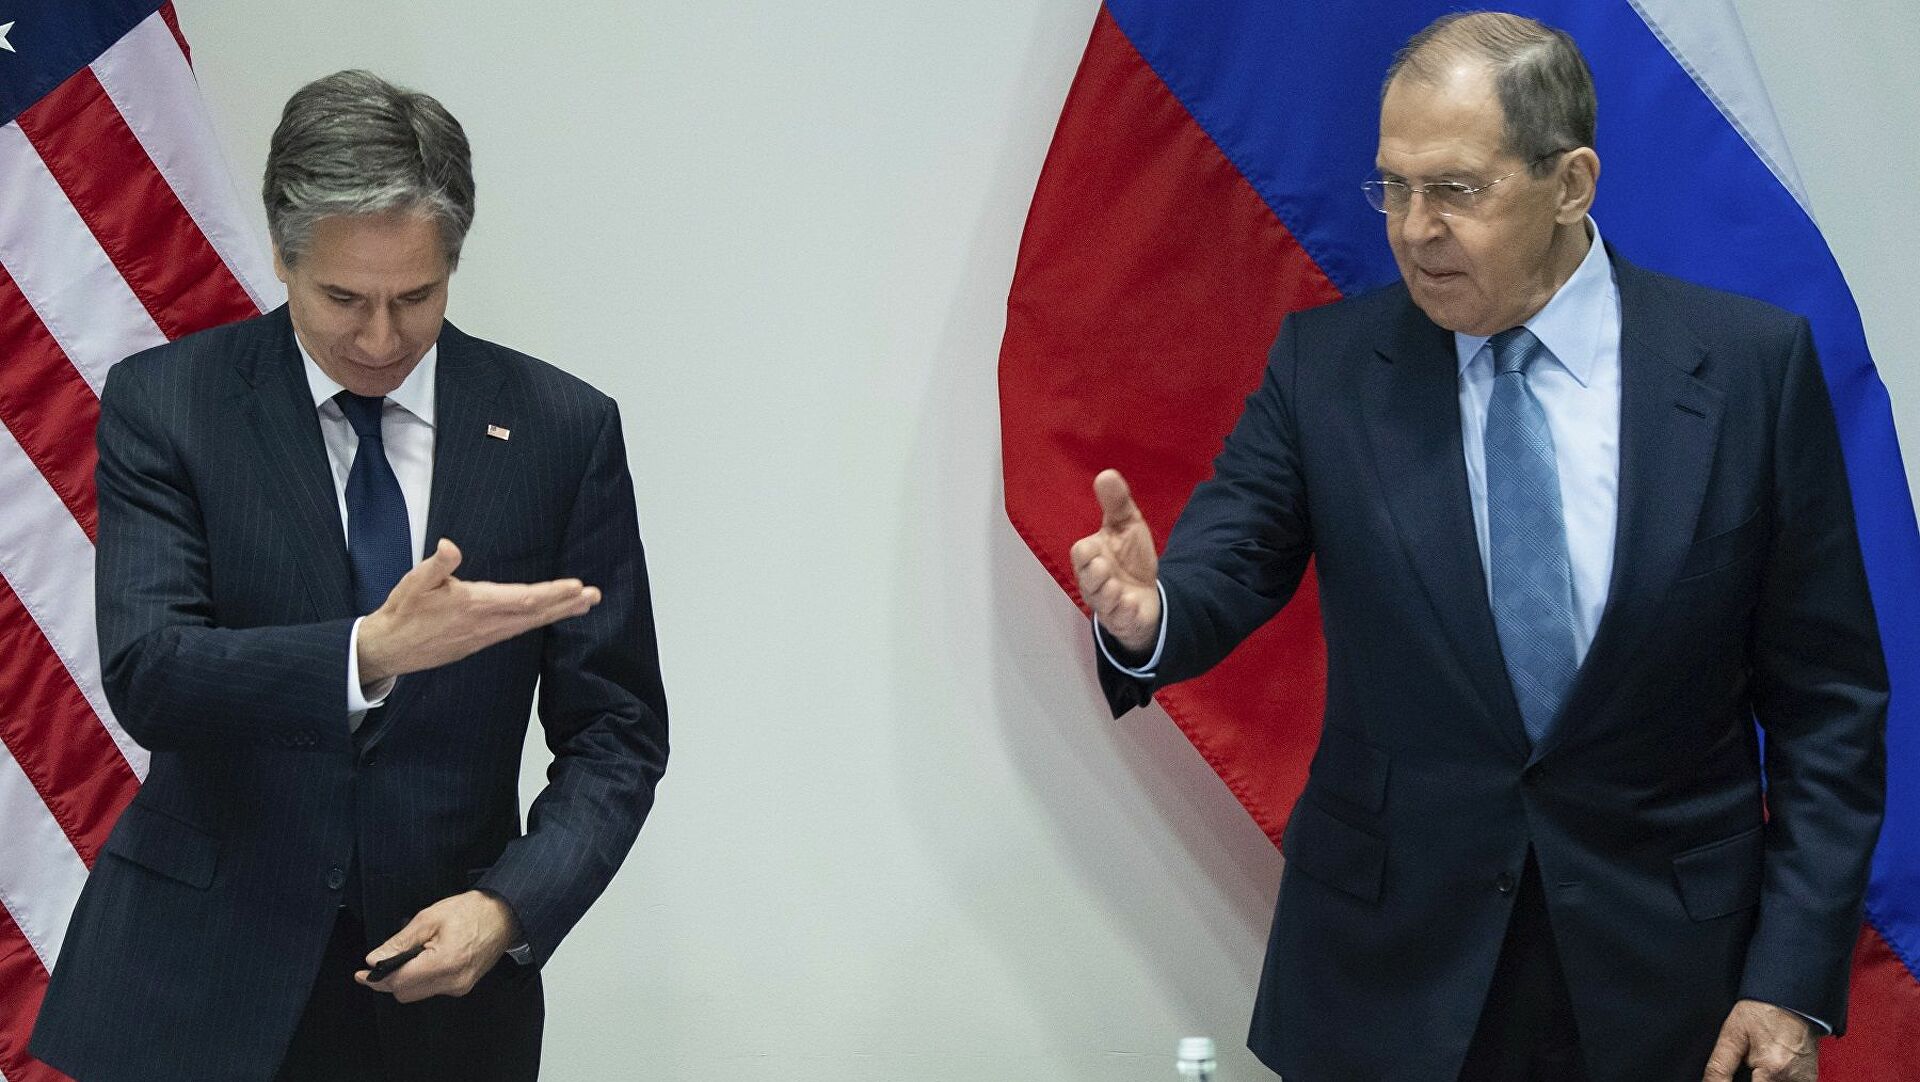 Tensionet në Ukrainë, Blinken dhe Lavrov takohen urgjentisht